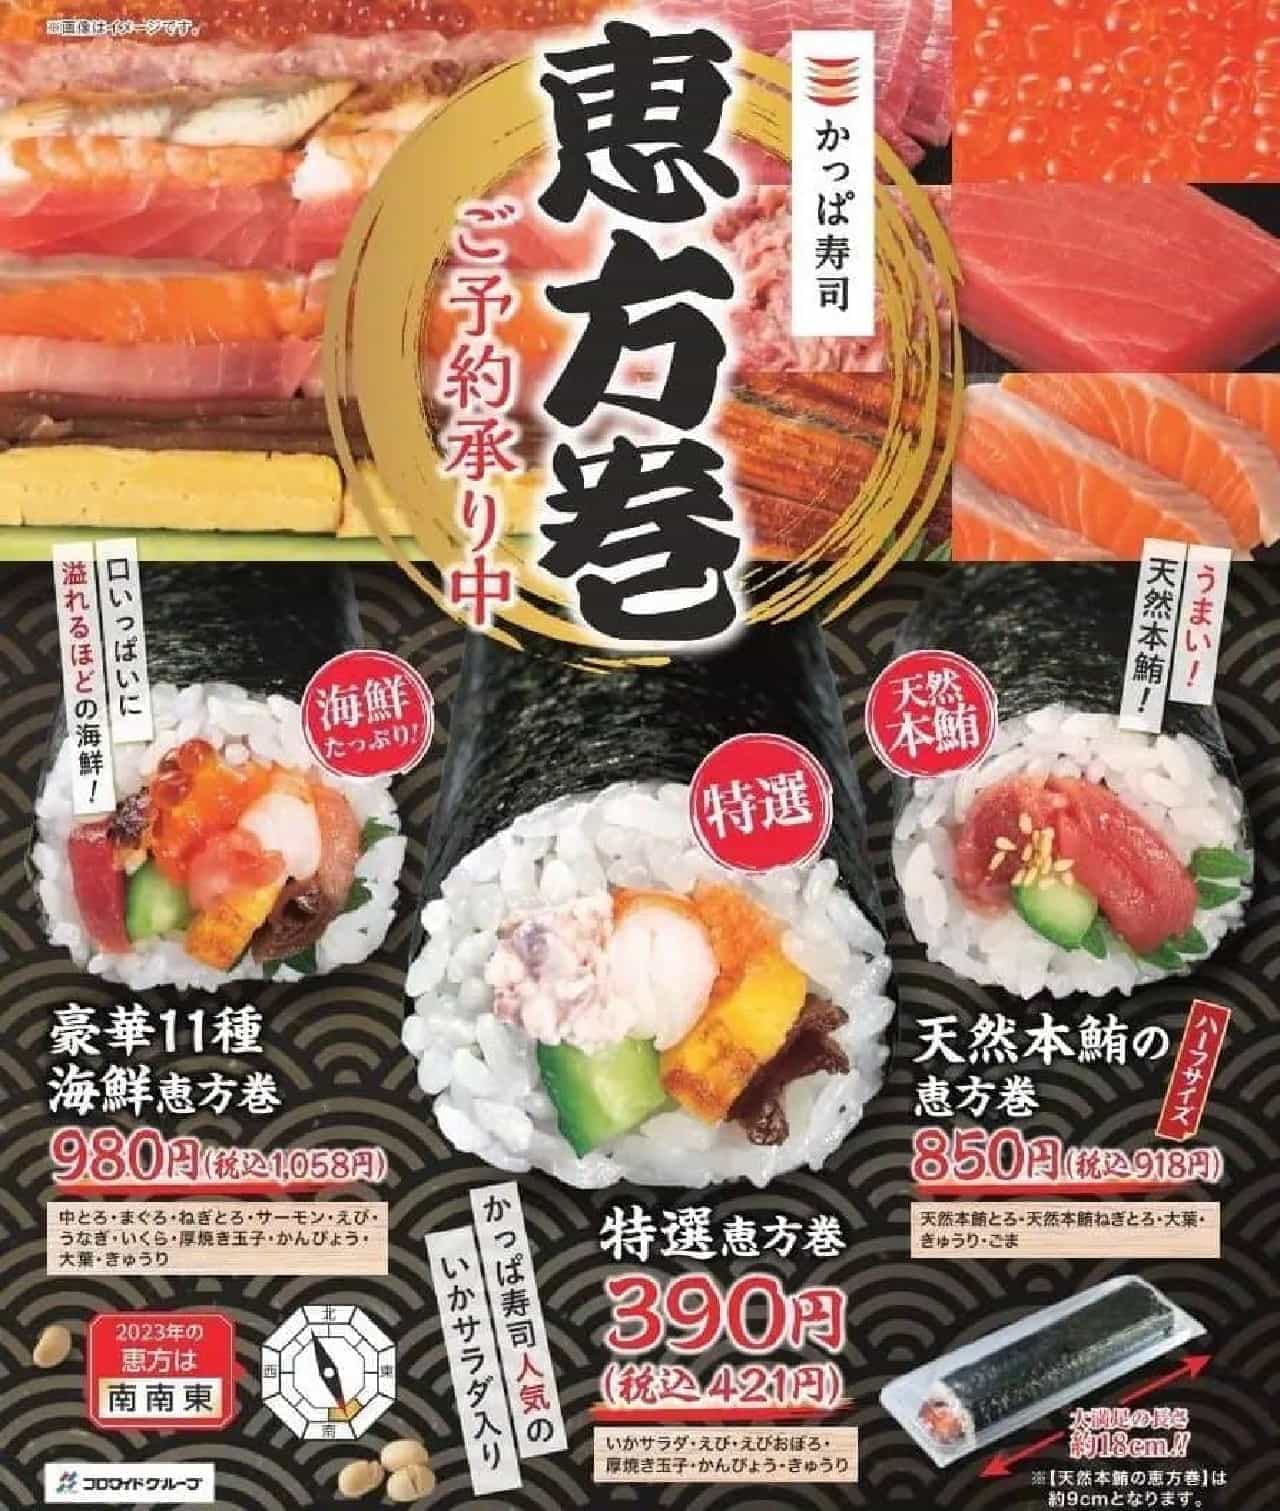 かっぱ寿司「特選恵方巻」「豪華11種海鮮恵方巻」「天然本鮪の恵方巻」